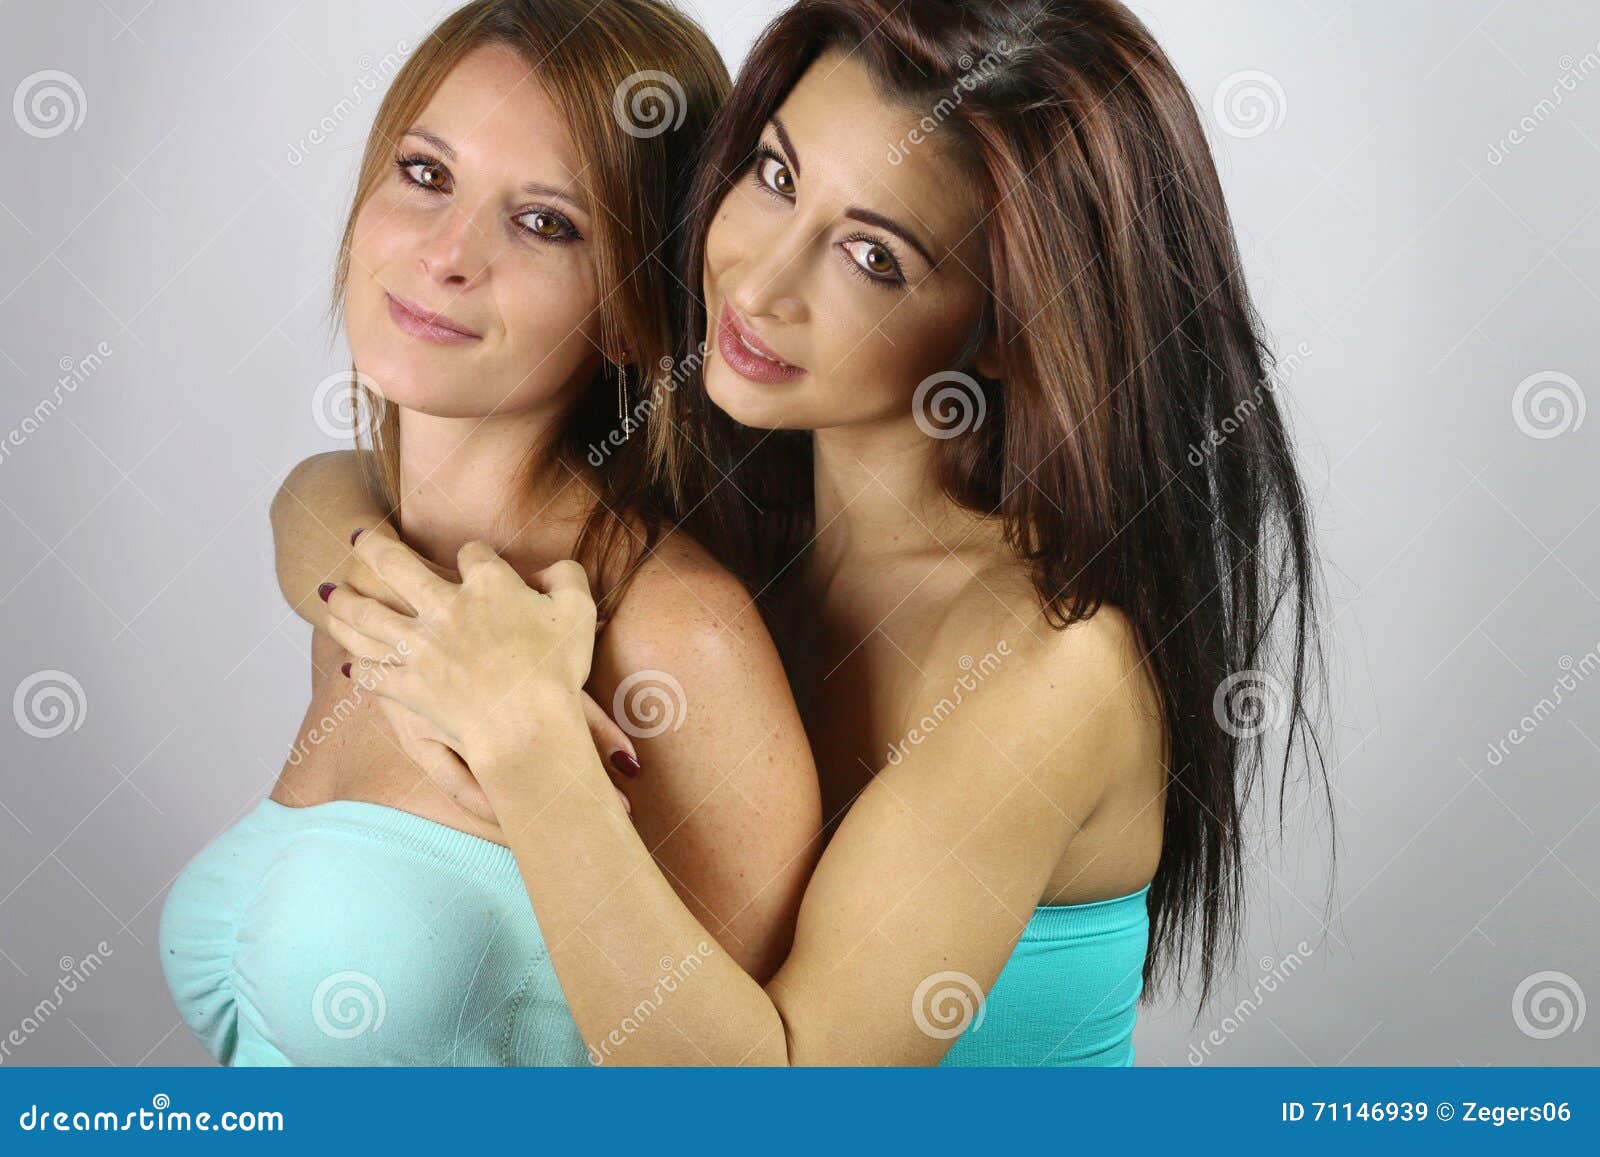 Twee Het Mooie Vrouwen Koesteren Stock Afbeelding - Image of paar, vrouwen:...